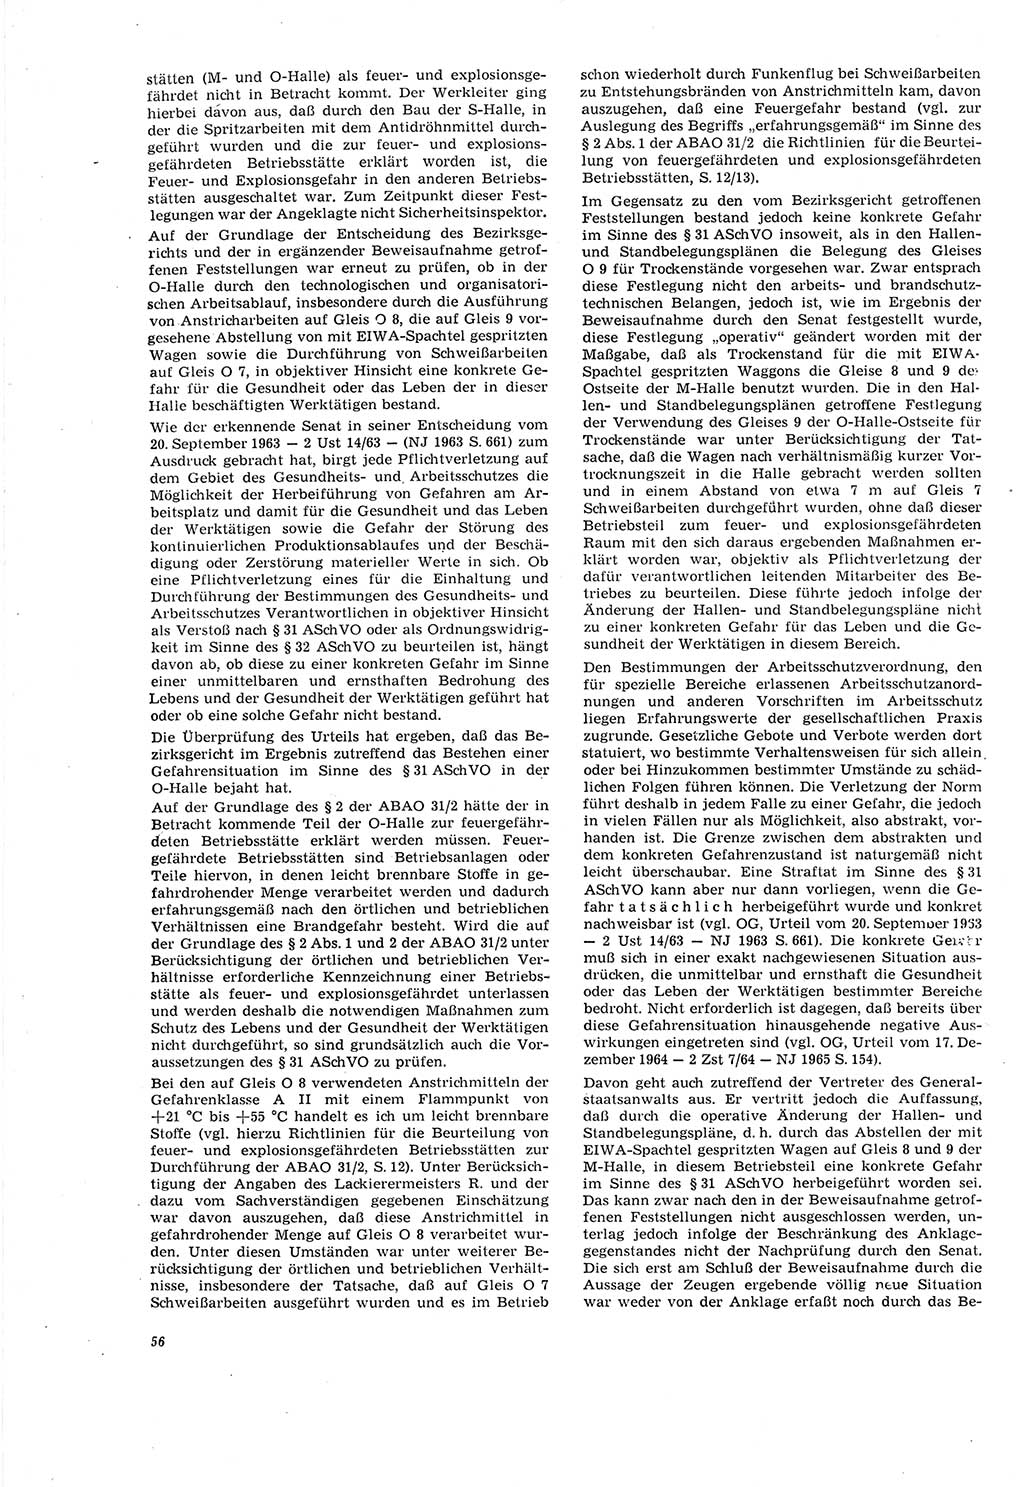 Neue Justiz (NJ), Zeitschrift für Recht und Rechtswissenschaft [Deutsche Demokratische Republik (DDR)], 20. Jahrgang 1966, Seite 56 (NJ DDR 1966, S. 56)